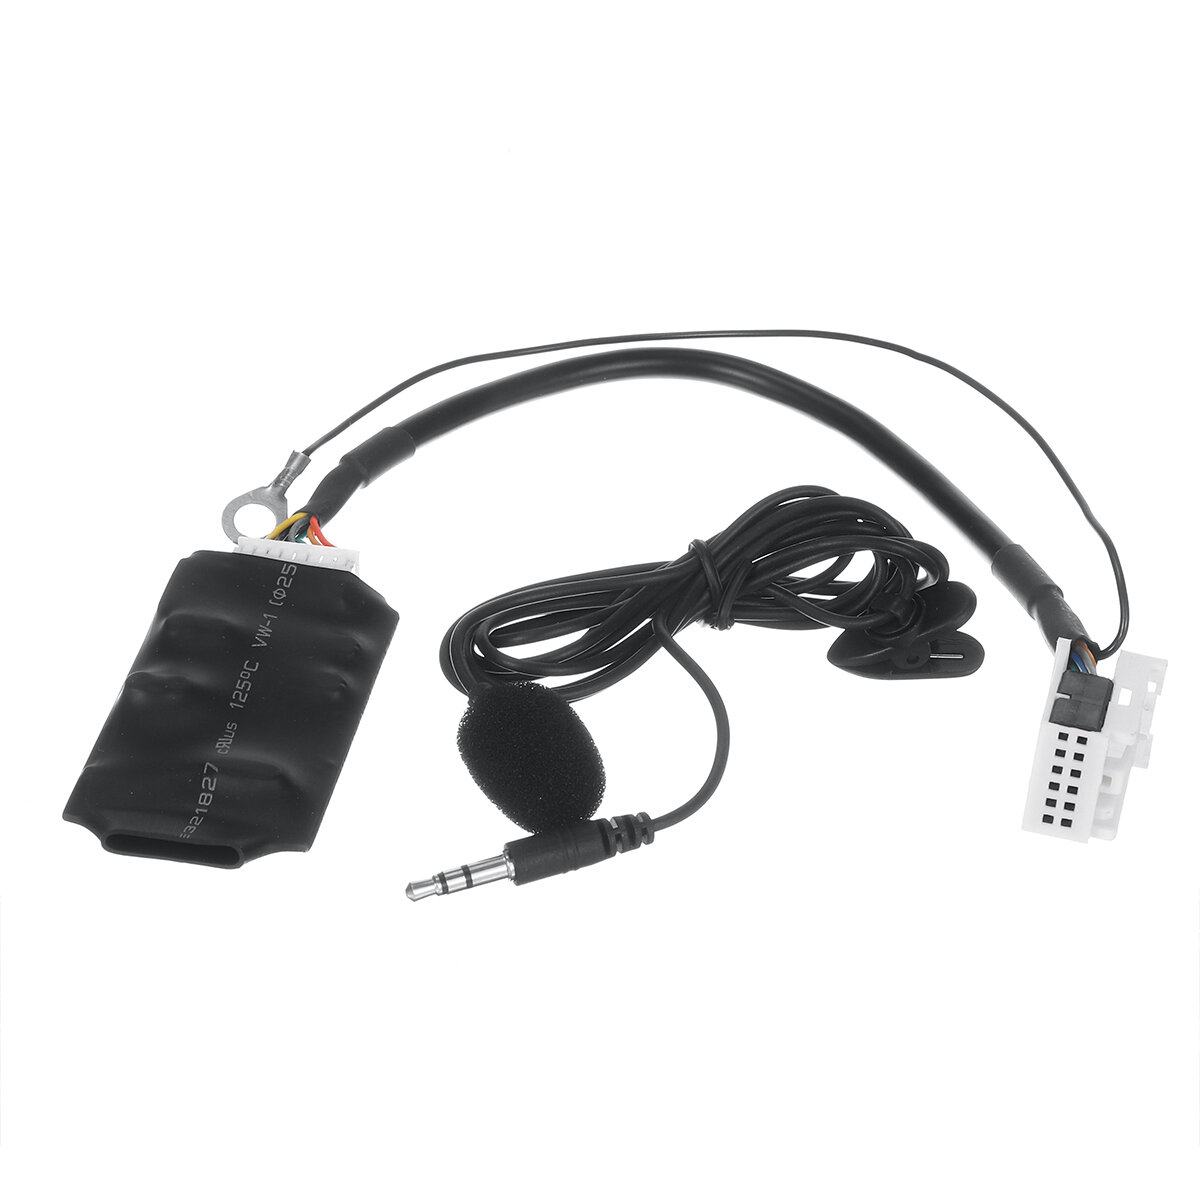 

12V Автомобильный Bluetooth AUX адаптер с микрофоном Handsfree+ Music Disc Box для Volkswagen Caddy